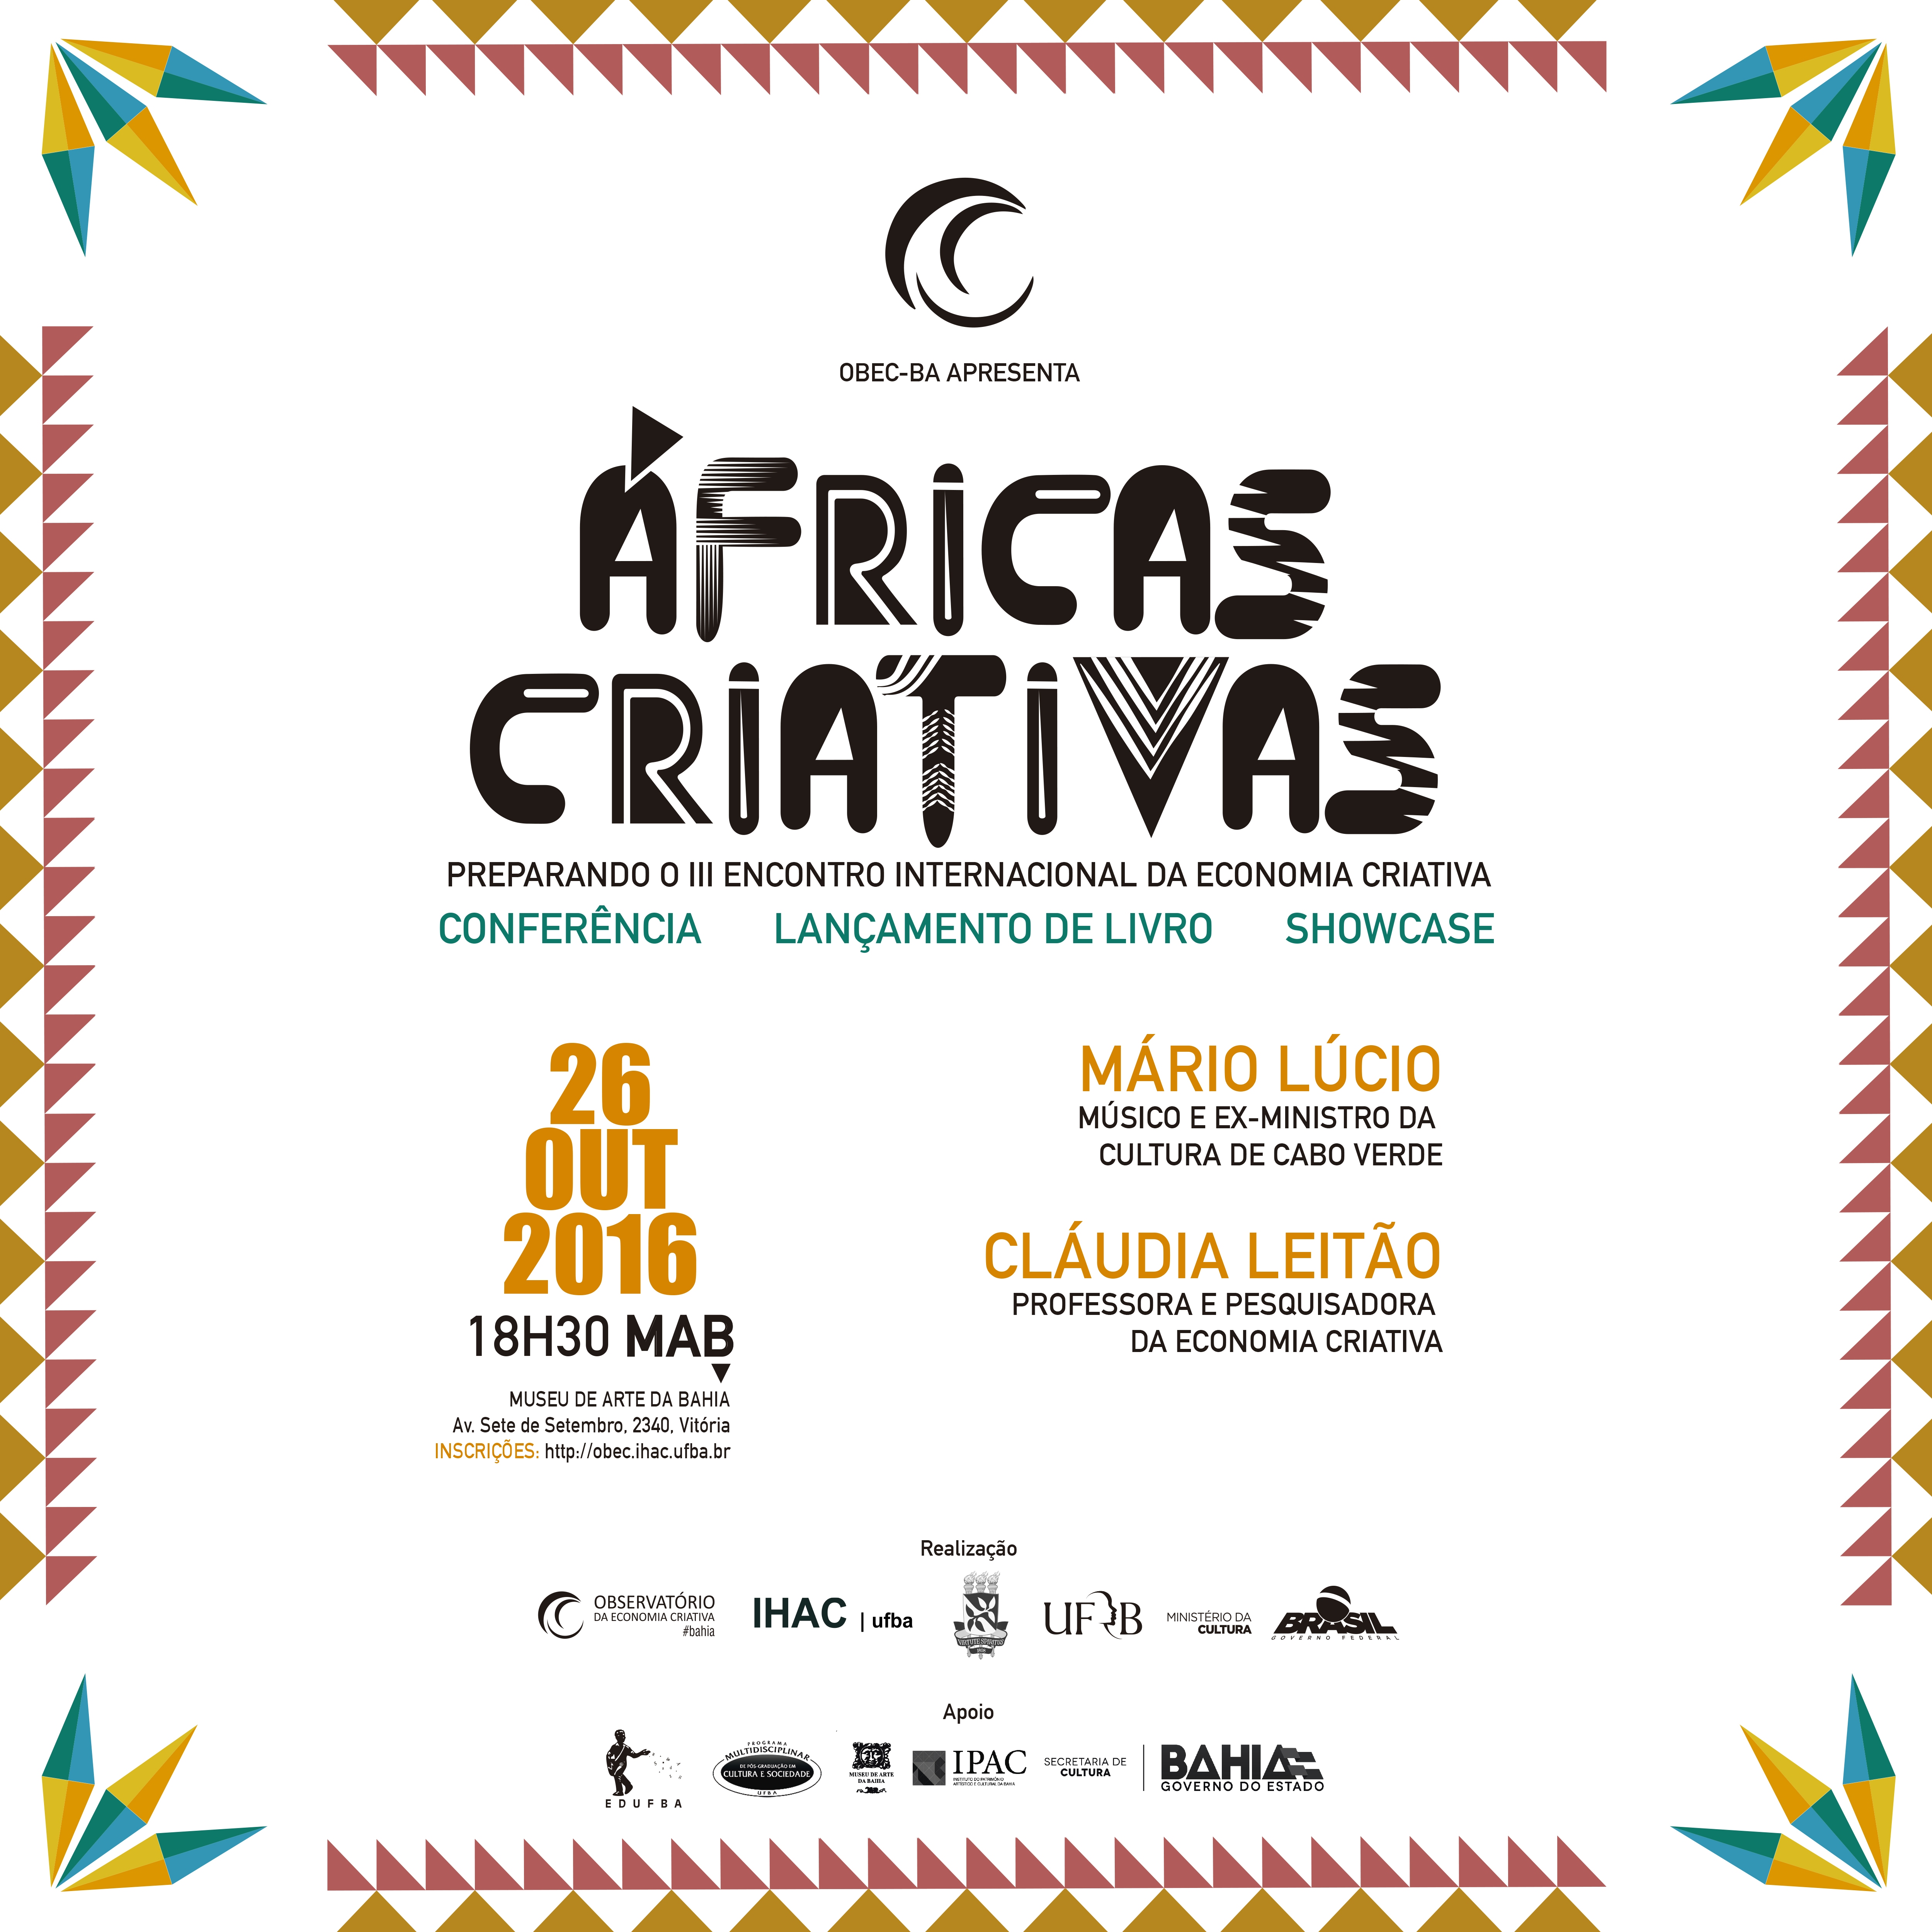 Áfricas Criativas: OBEC-BA convida Mário Lúcio Sousa, músico e ex-ministro da Cultura de Cabo Verde, para os preparativos do III Encontro Internacional da Economia Criativa